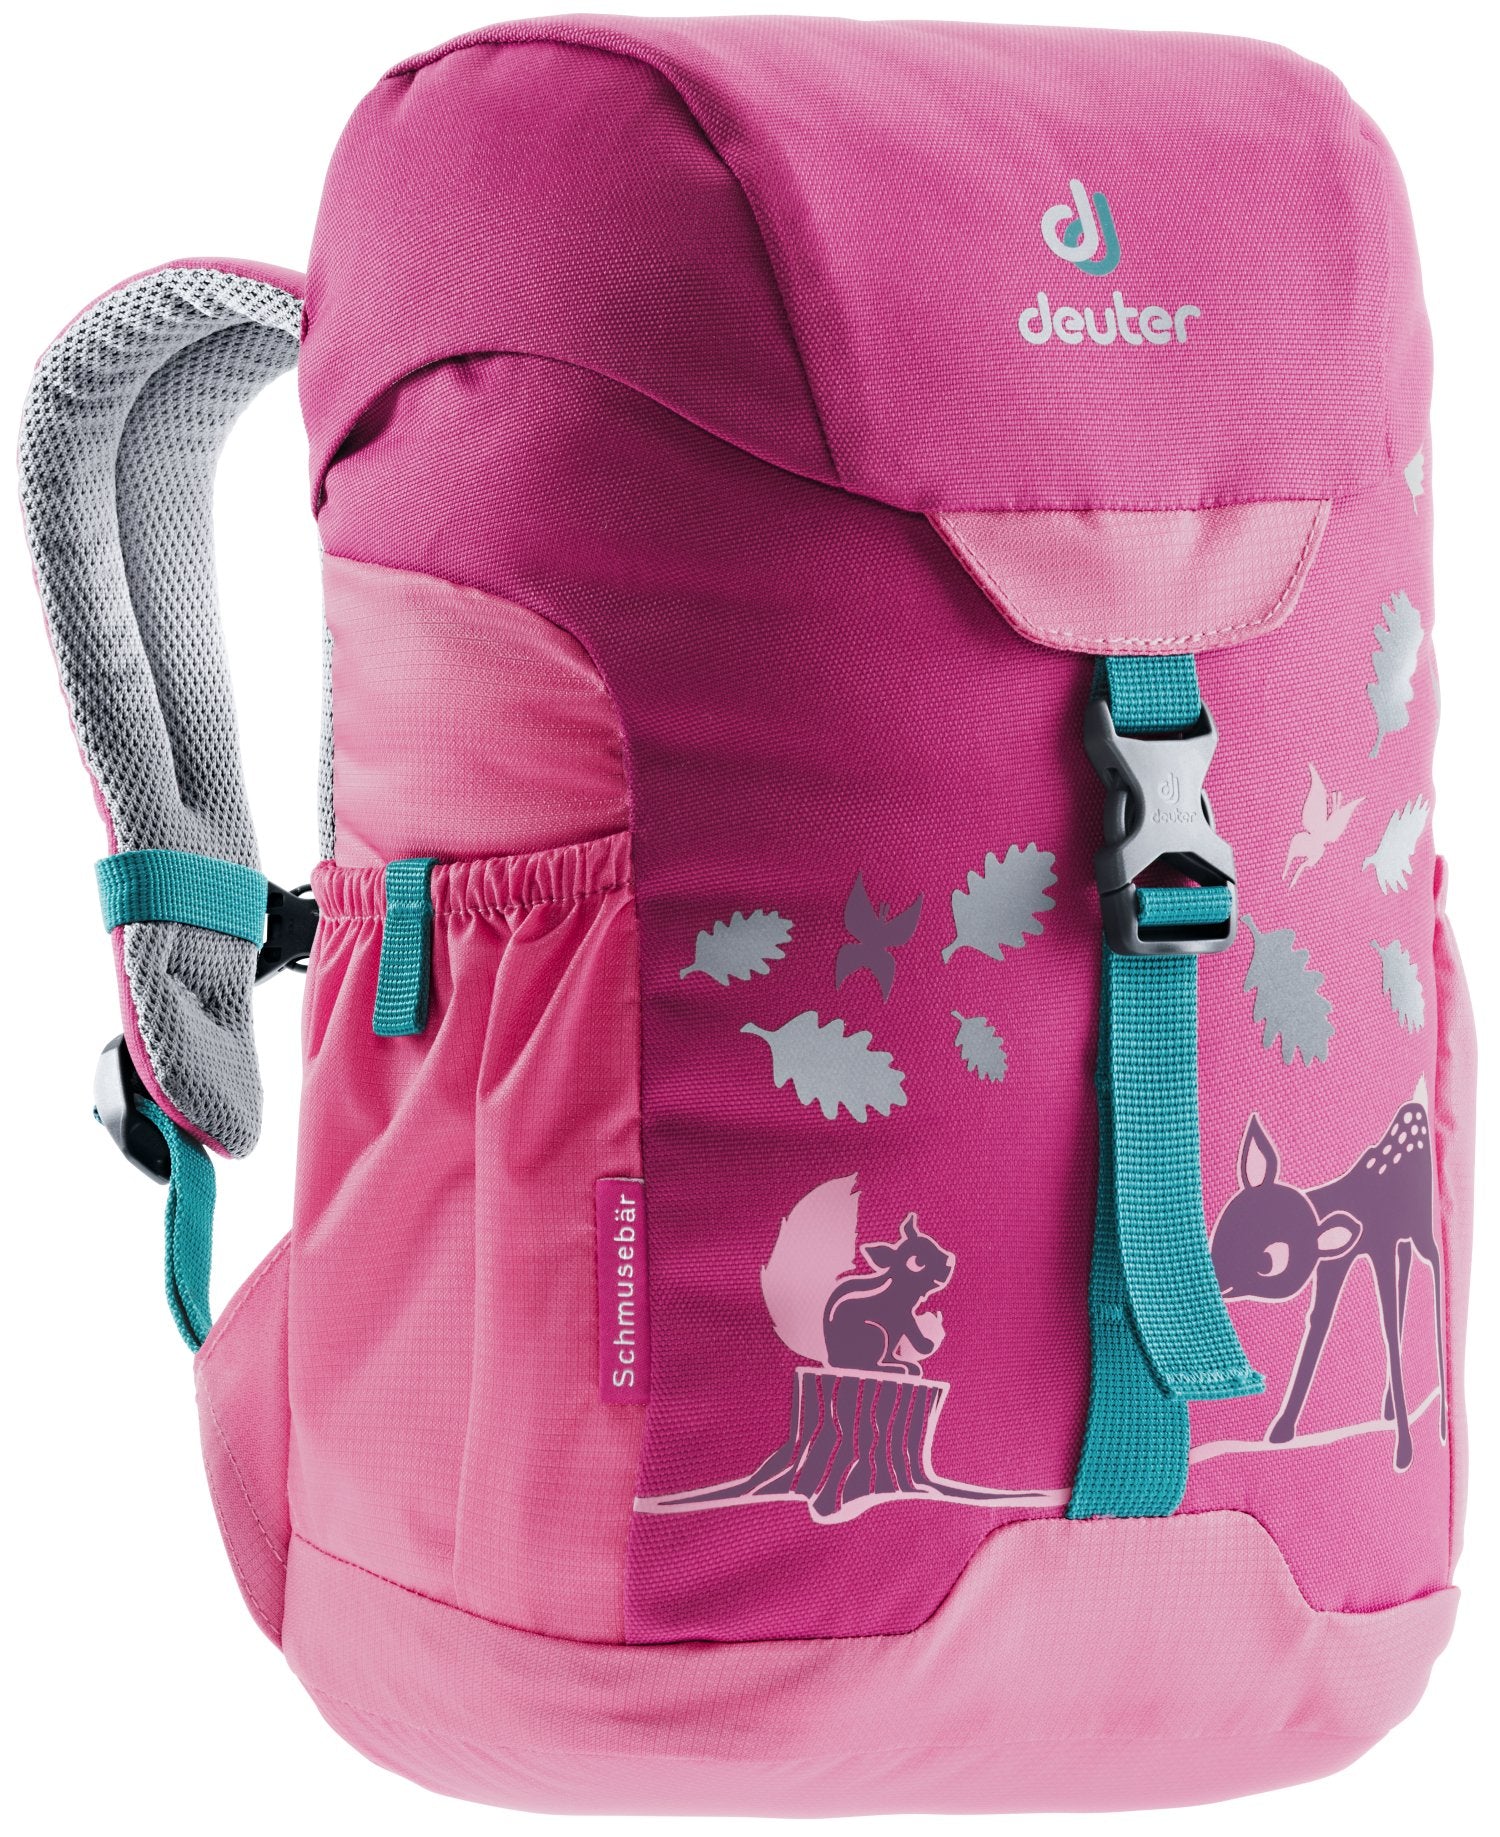 Deuter Schmusebär 8L Children's Backpack